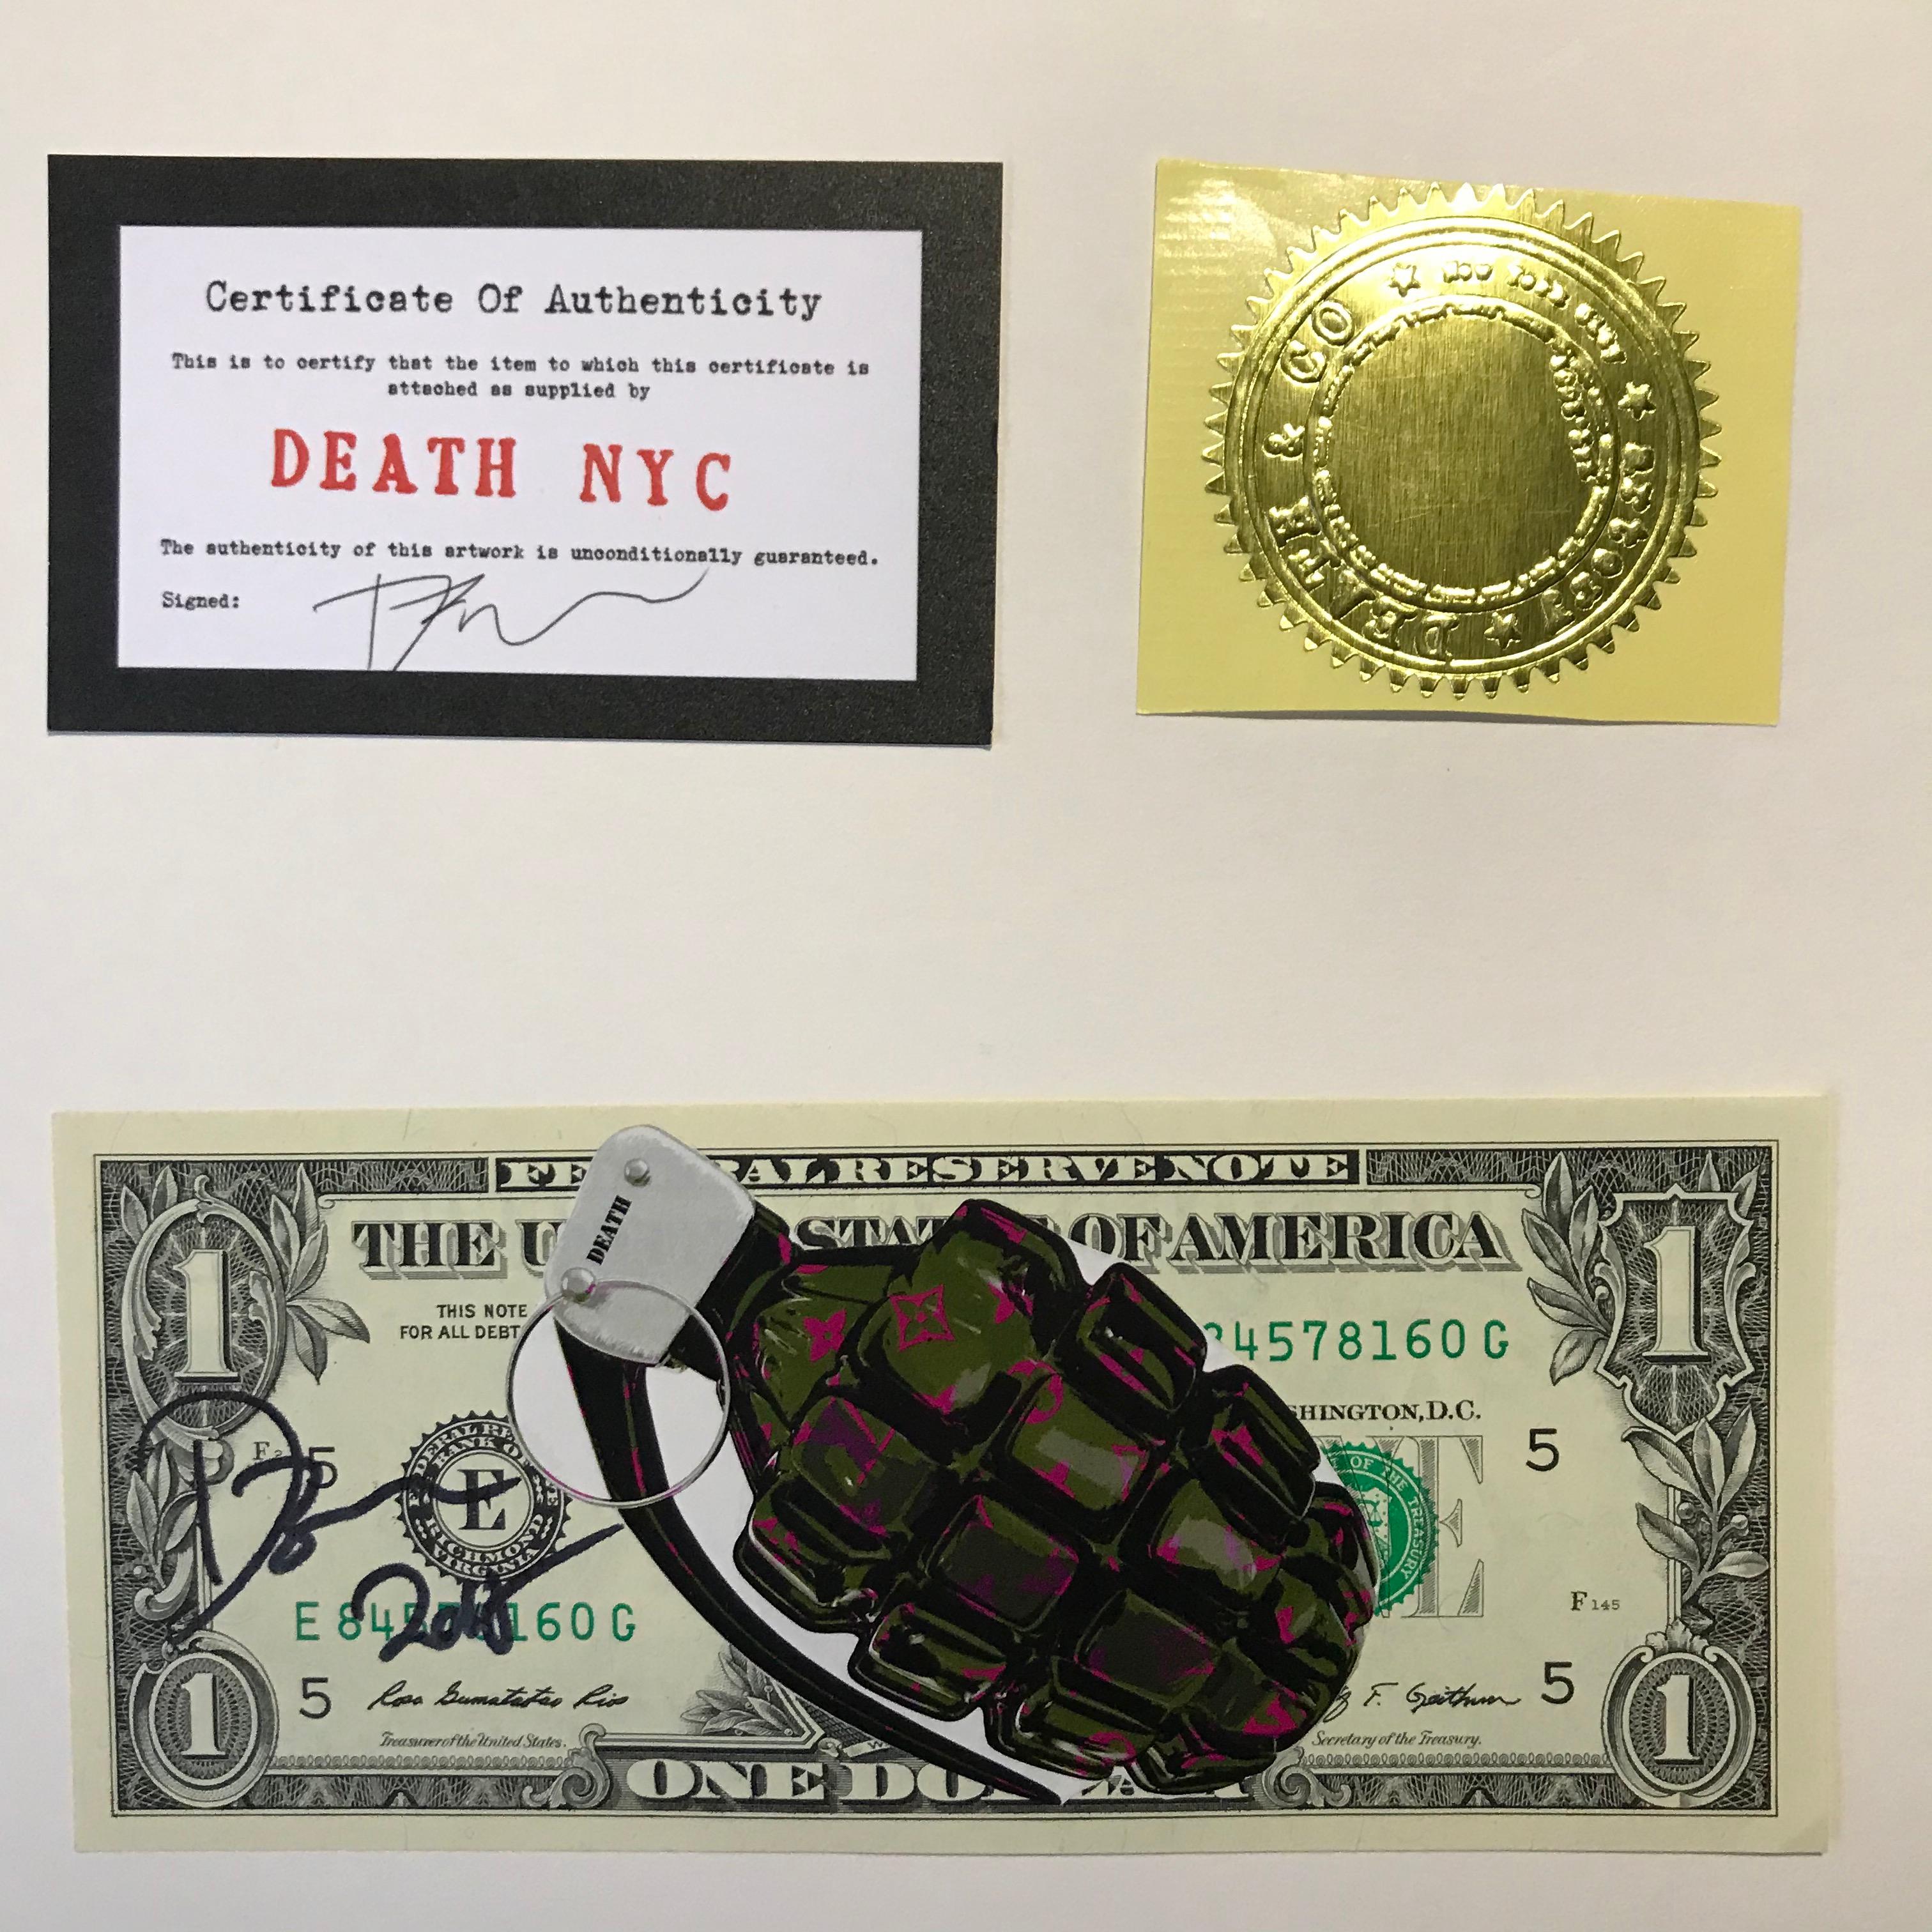 Death NYC
Vuitton grenade   
Techniques mixtes sur billet de 1 dollar
2017
Exemplaire unique 
2 certificats 
Signé et daté 
15,5 x 6,7 cms
99 euros